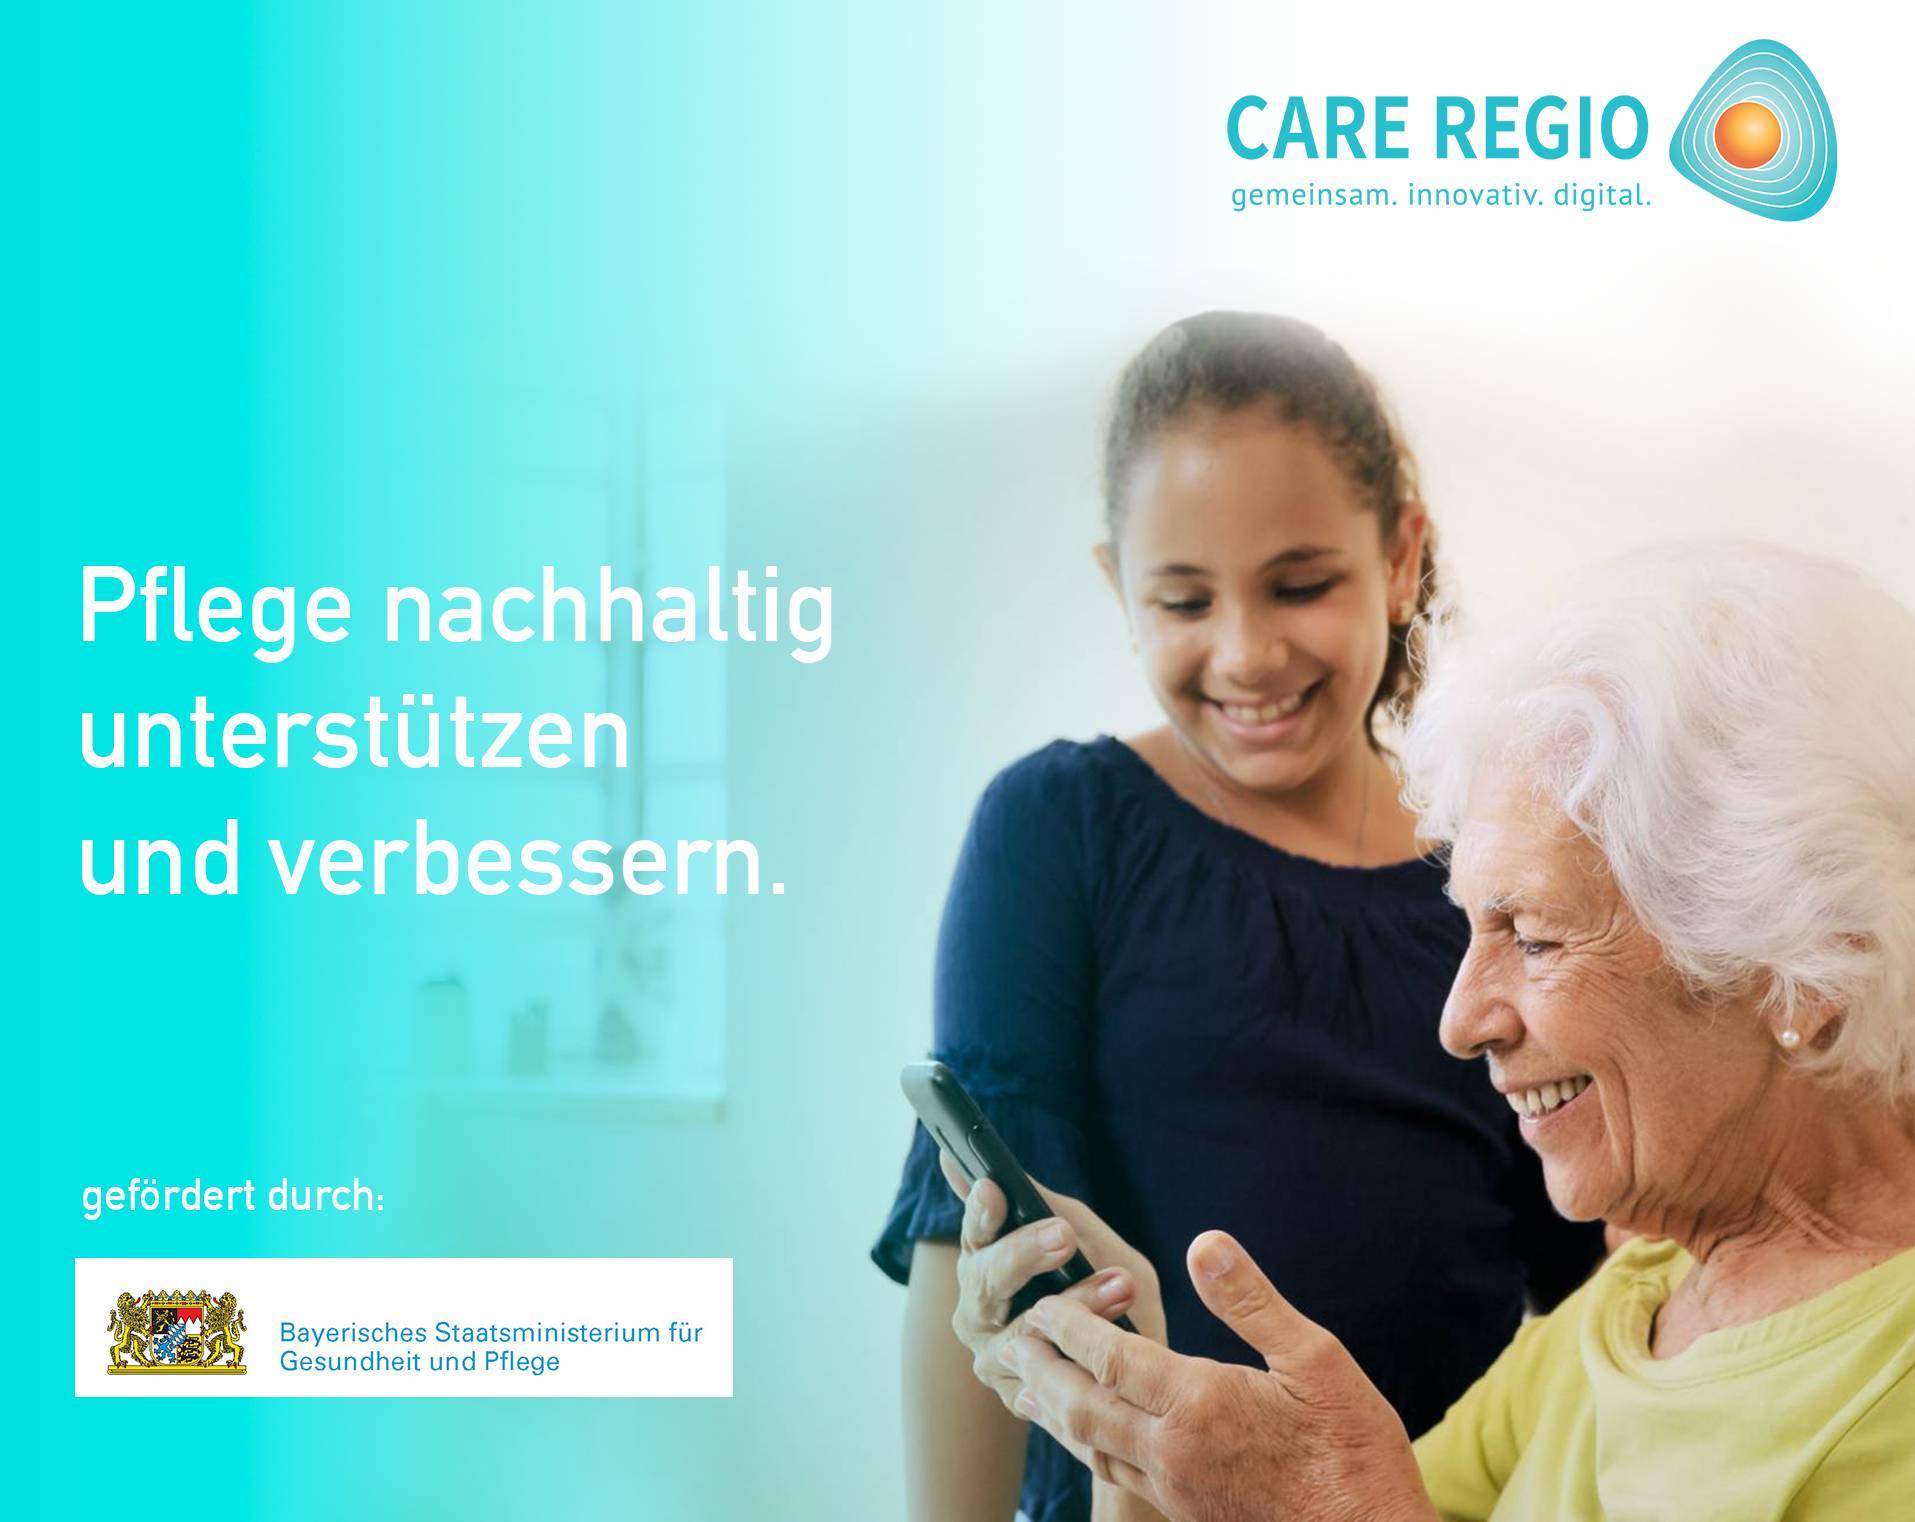 CARE REGIO - Pflege nachhaltig unterstützen und verbessern.